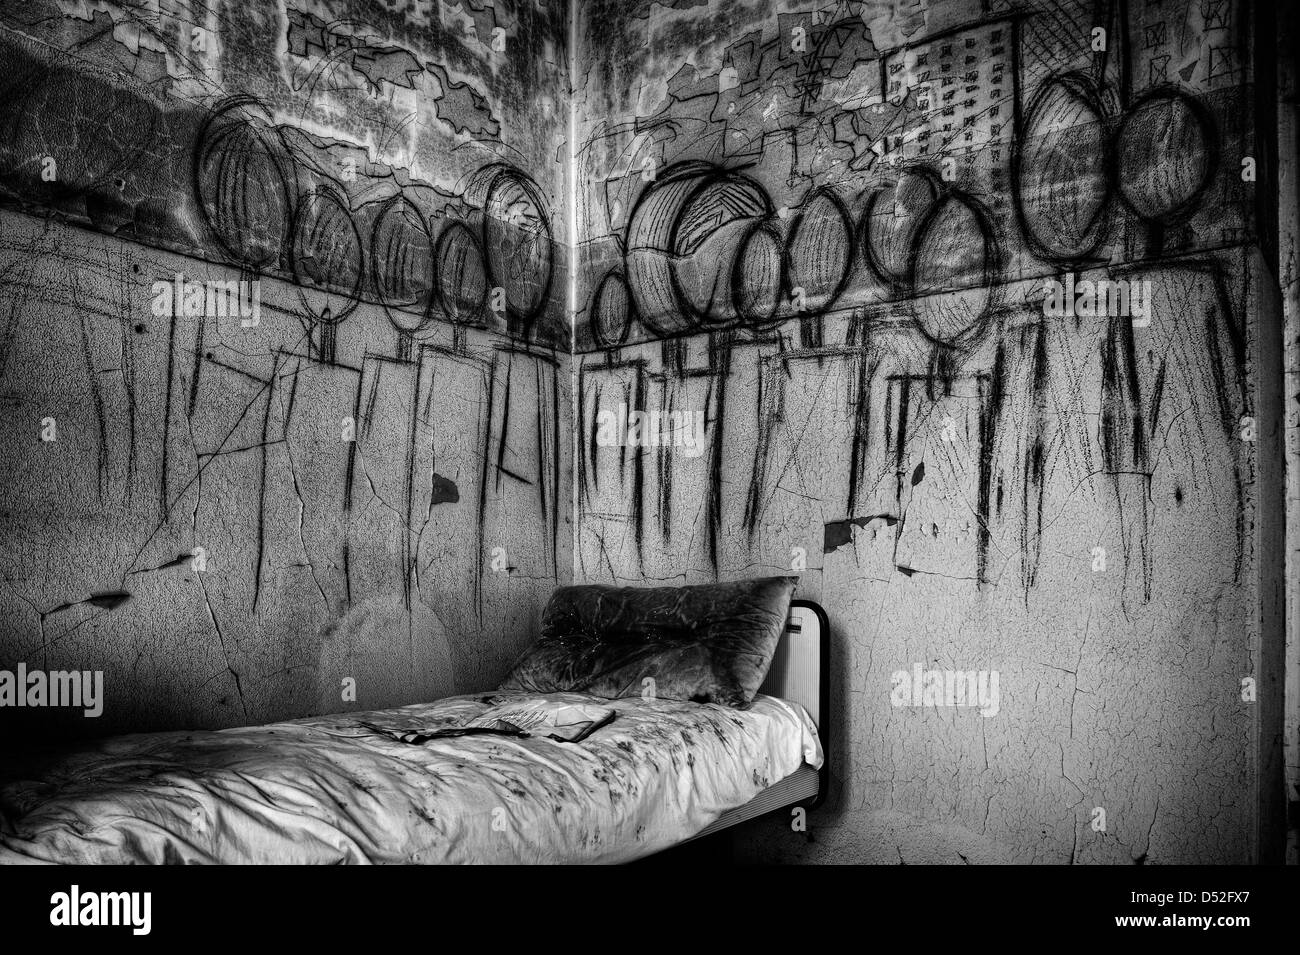 Italie. abandonné. de l'hôpital psychiatrique de fresque avec cauchemars matérialisée Banque D'Images